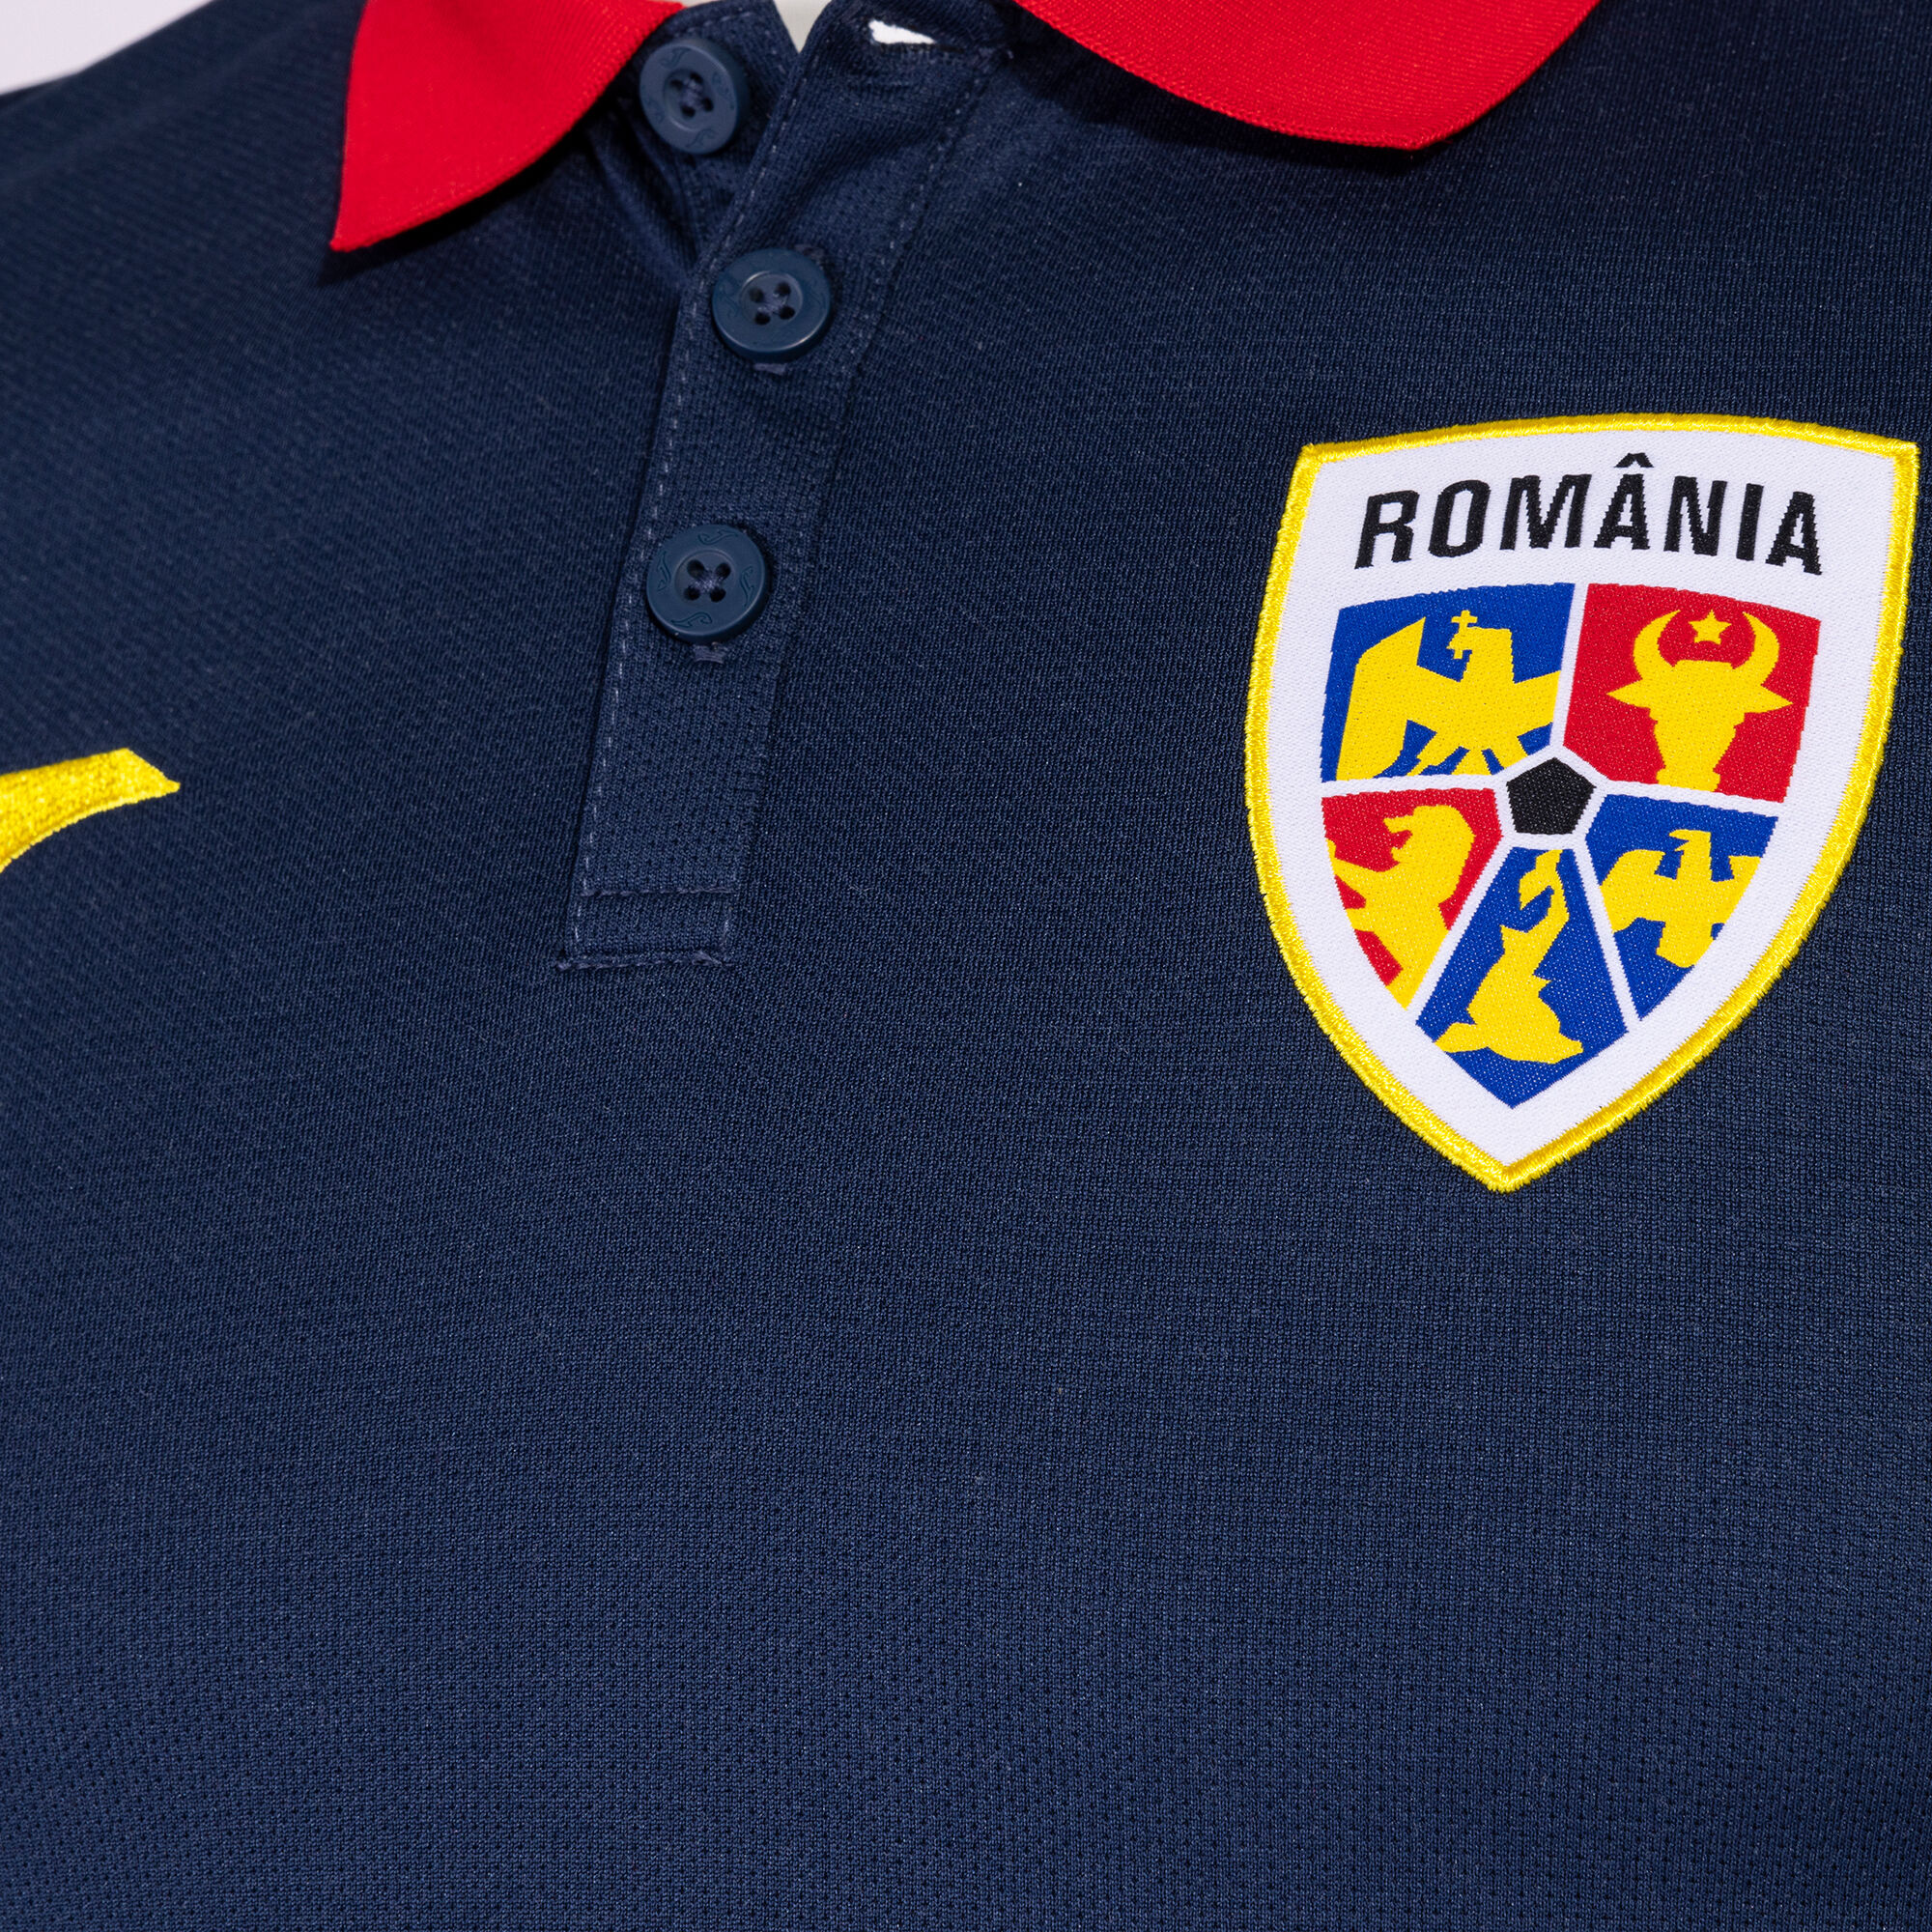 Polo manga corta staff técnico paseo Federación Rumana Fútbol